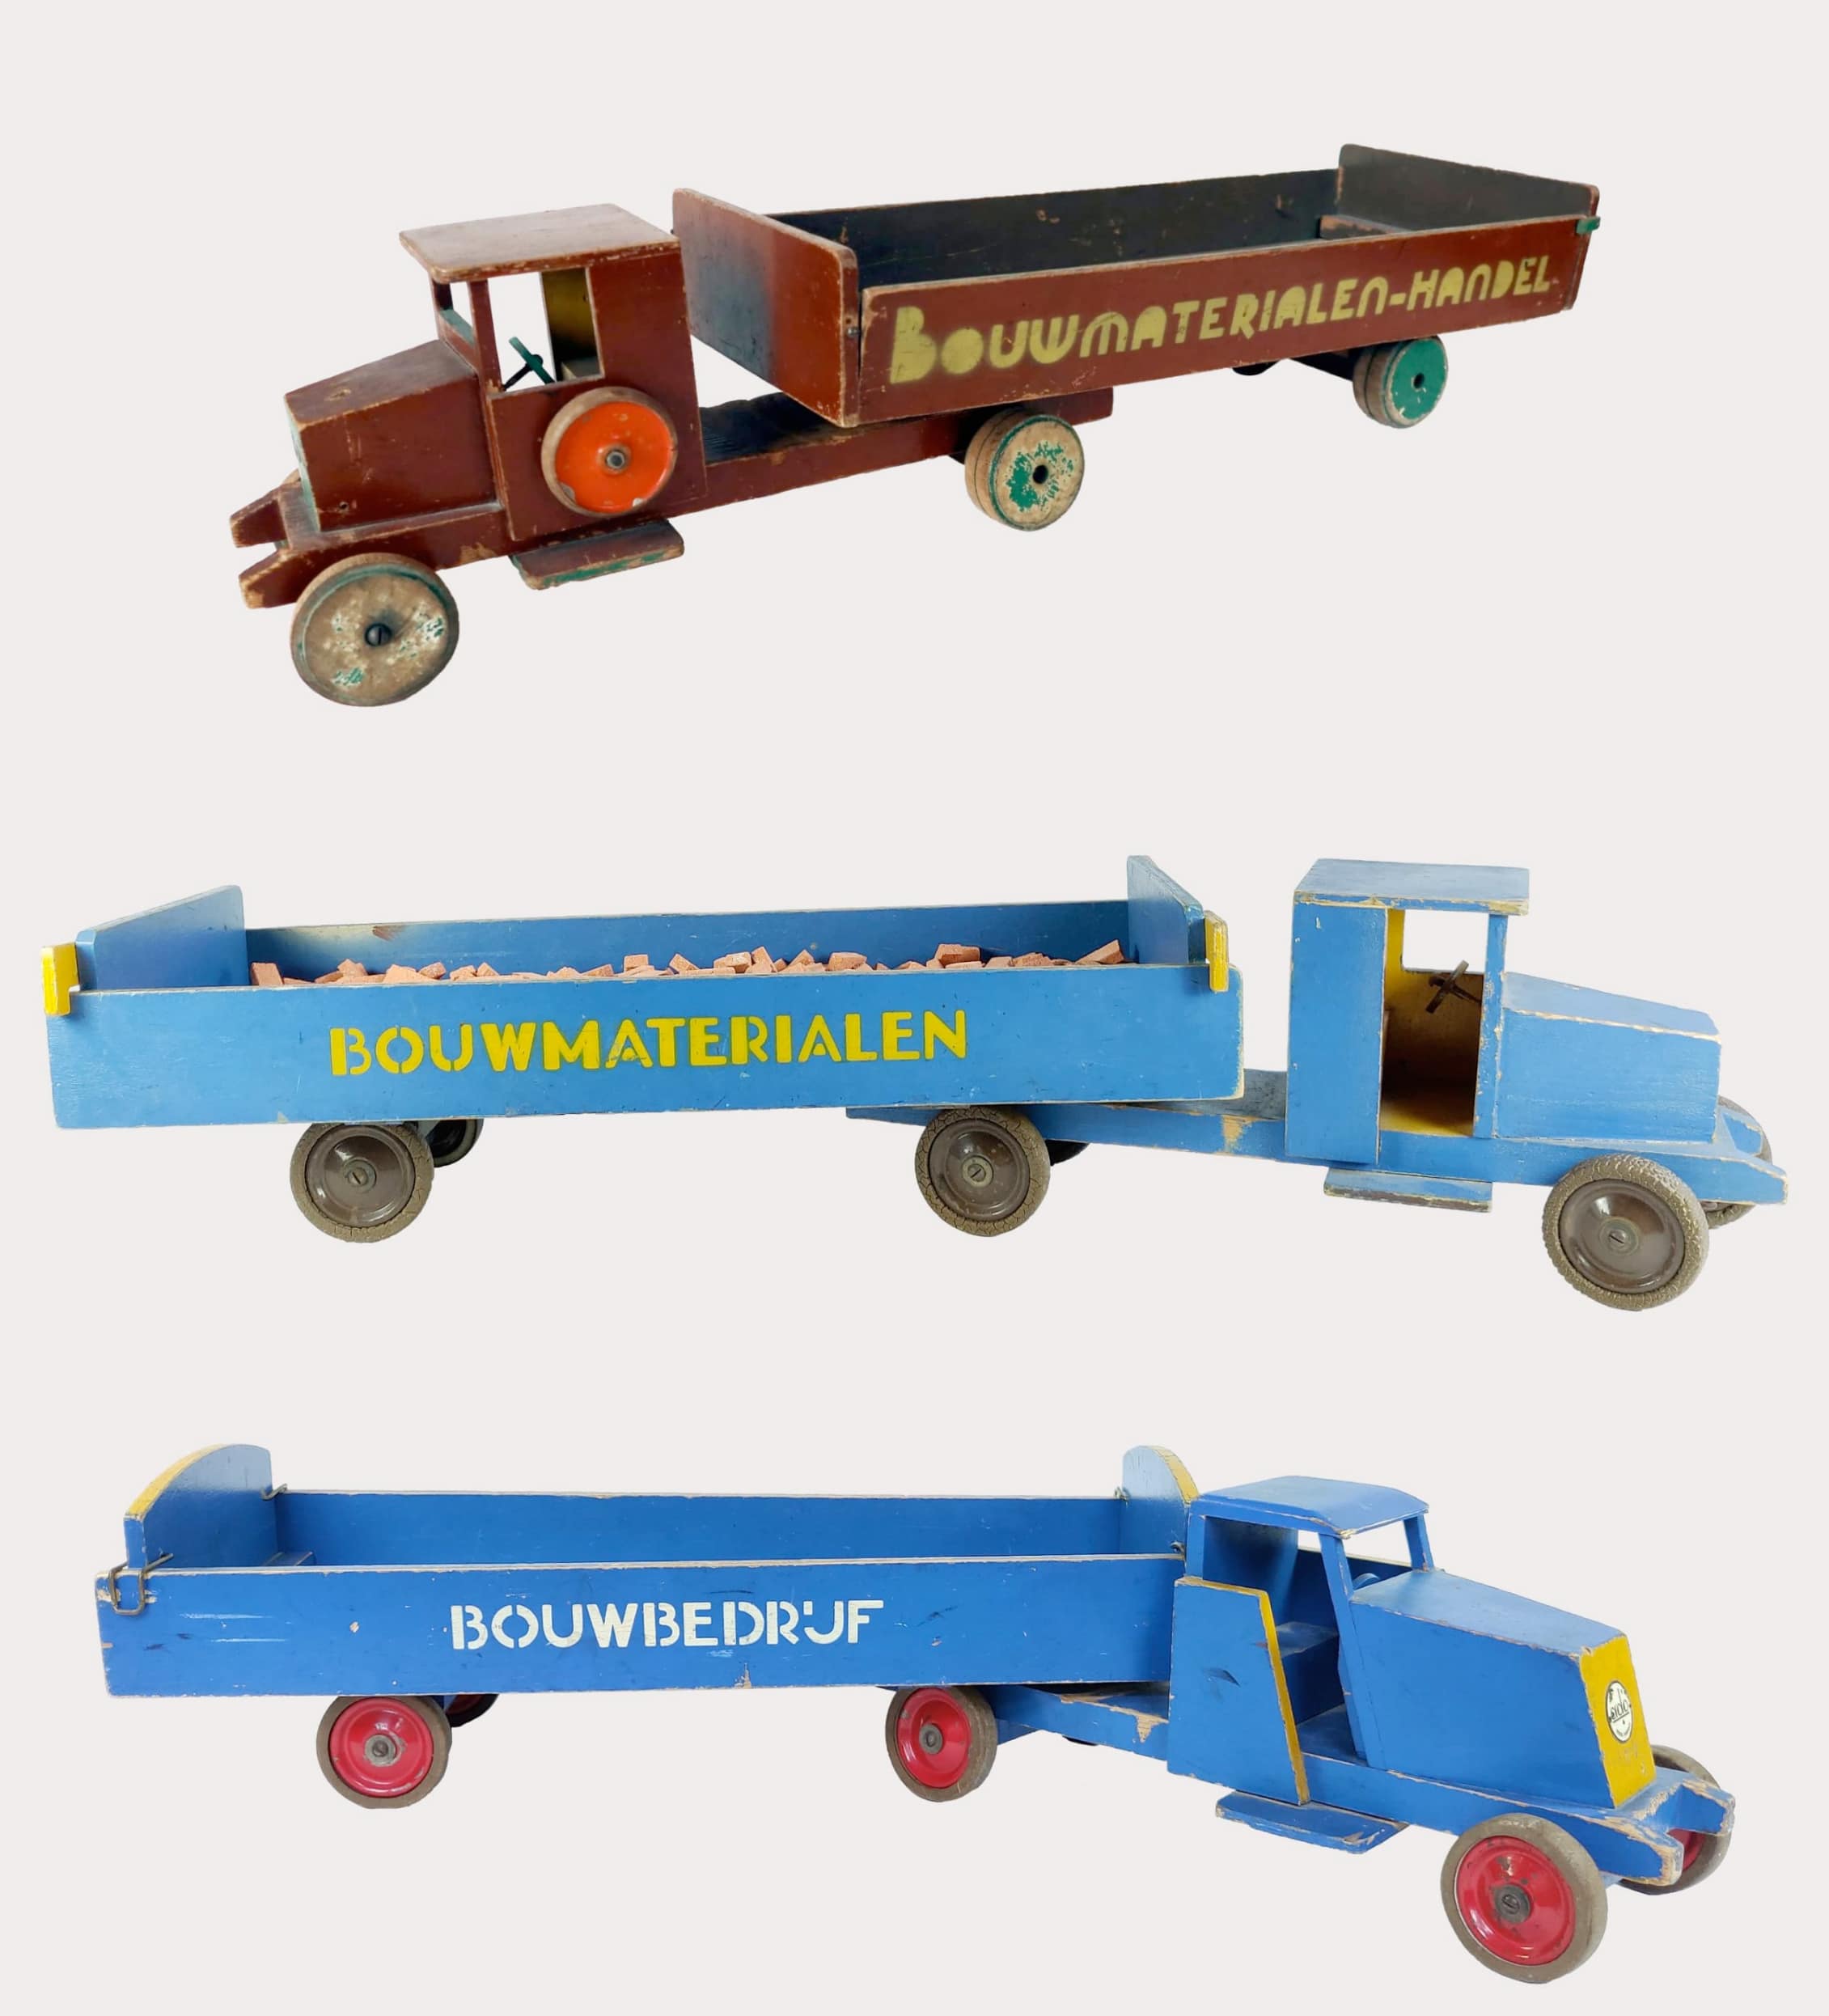 Drie verschillende bouwmaterialen-wagens van ado speelgoed